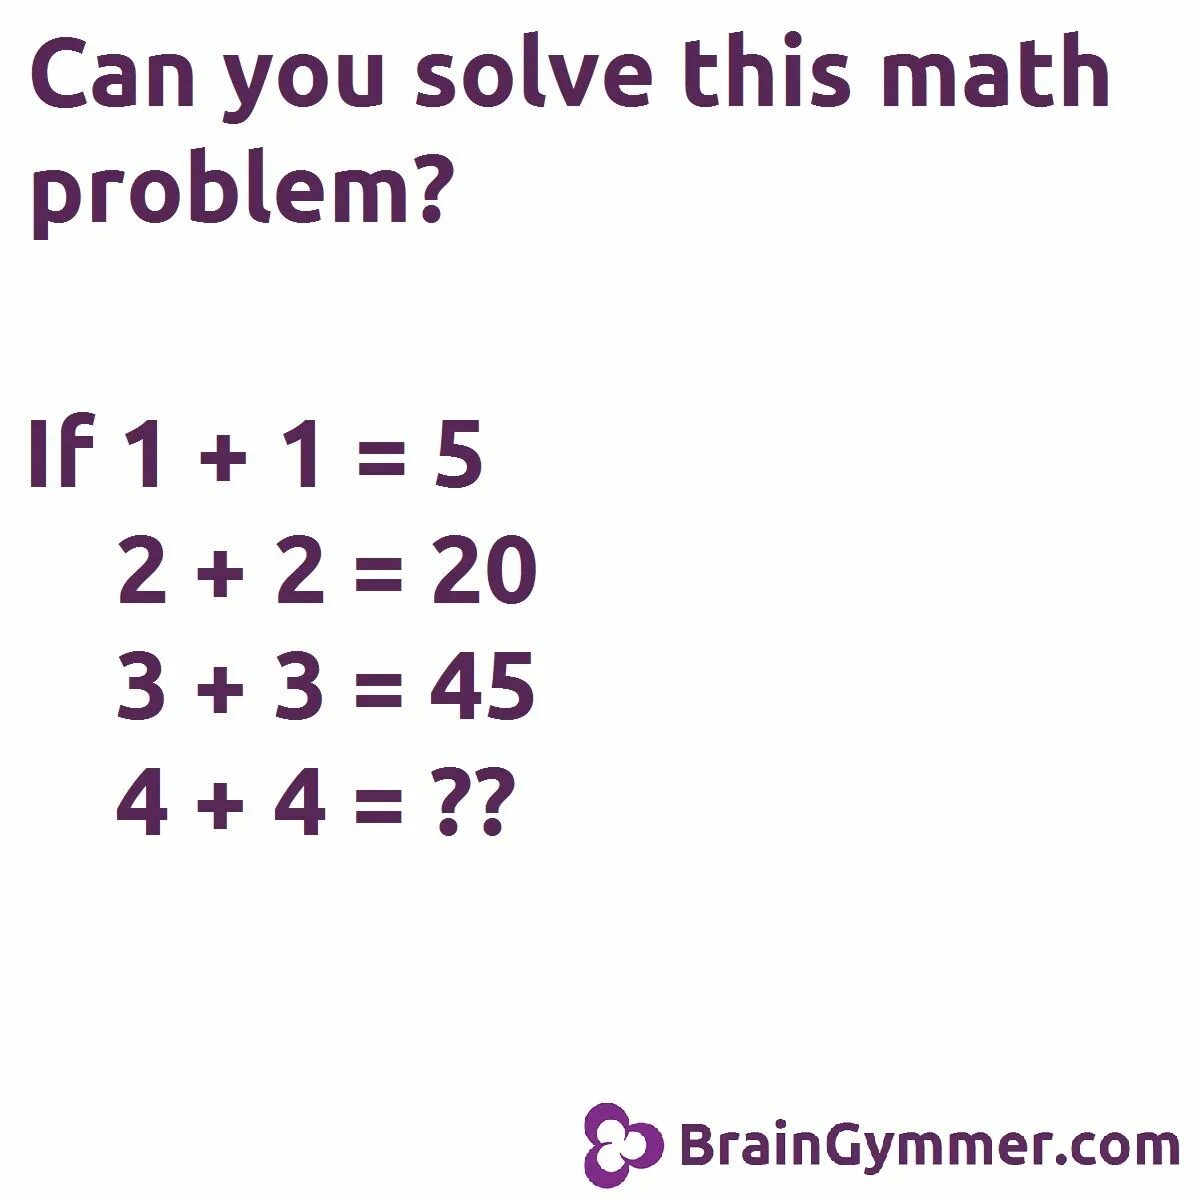 Mathematics problems. Math problems. Solve Math. Solve Math problems. Solve Maths problems.